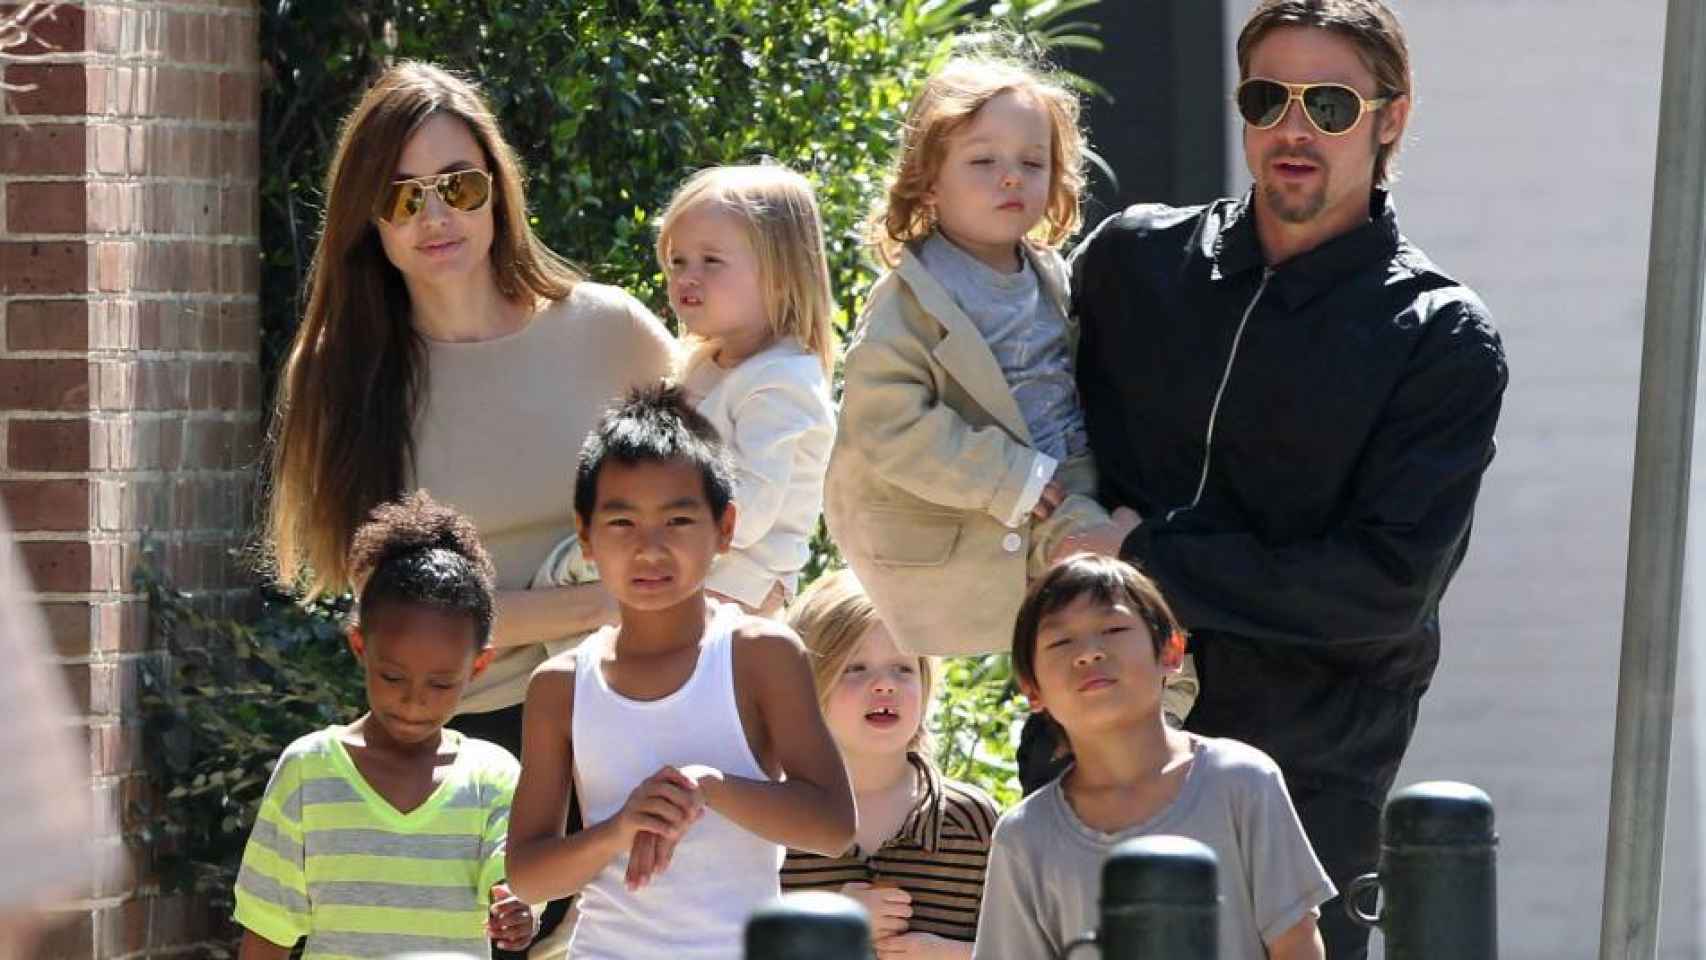 La familia Pitt Jolie ha sufrido un duro golpe desde que se anunciara su divorcio en septiembre.